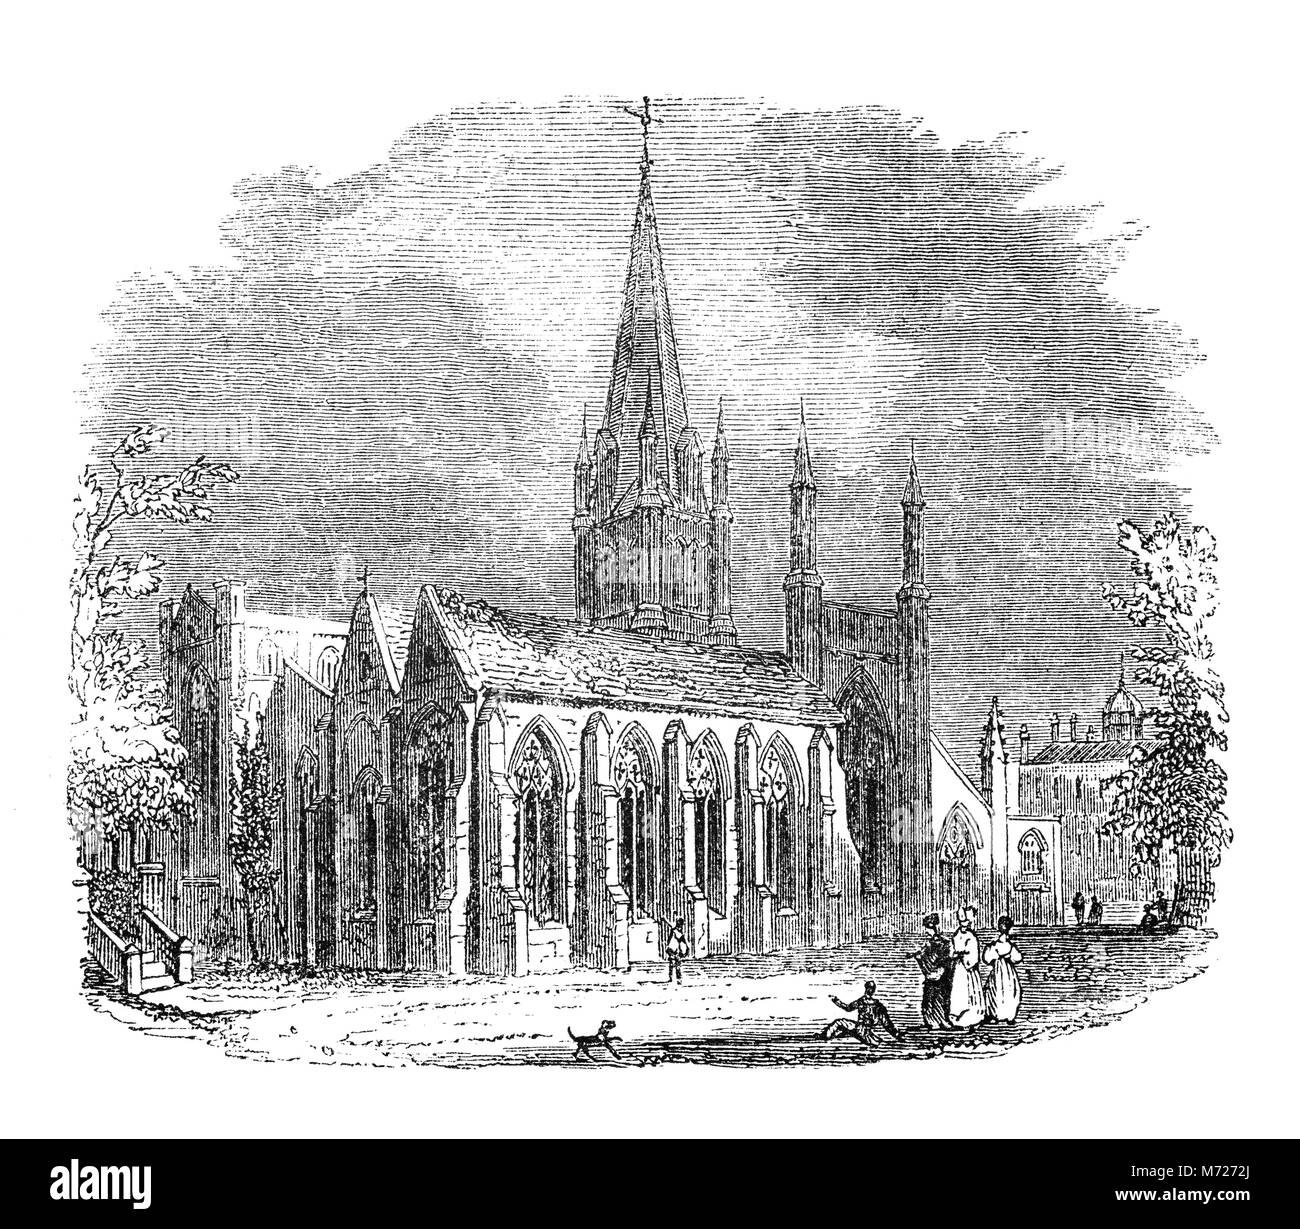 Die romanisch-gotische Christus Kirche Kathedrale wurde 1546 gegründet und ist auch die Kapelle der Kirche Christi an der Universität Oxford. Diese doppelte Rolle als Kathedrale und College Chapel ist einzigartig in der Kirche von England. Die Kathedrale war ursprünglich die Kirche St. Frideswide des Priorat. Oxfordshire, England. Stockfoto